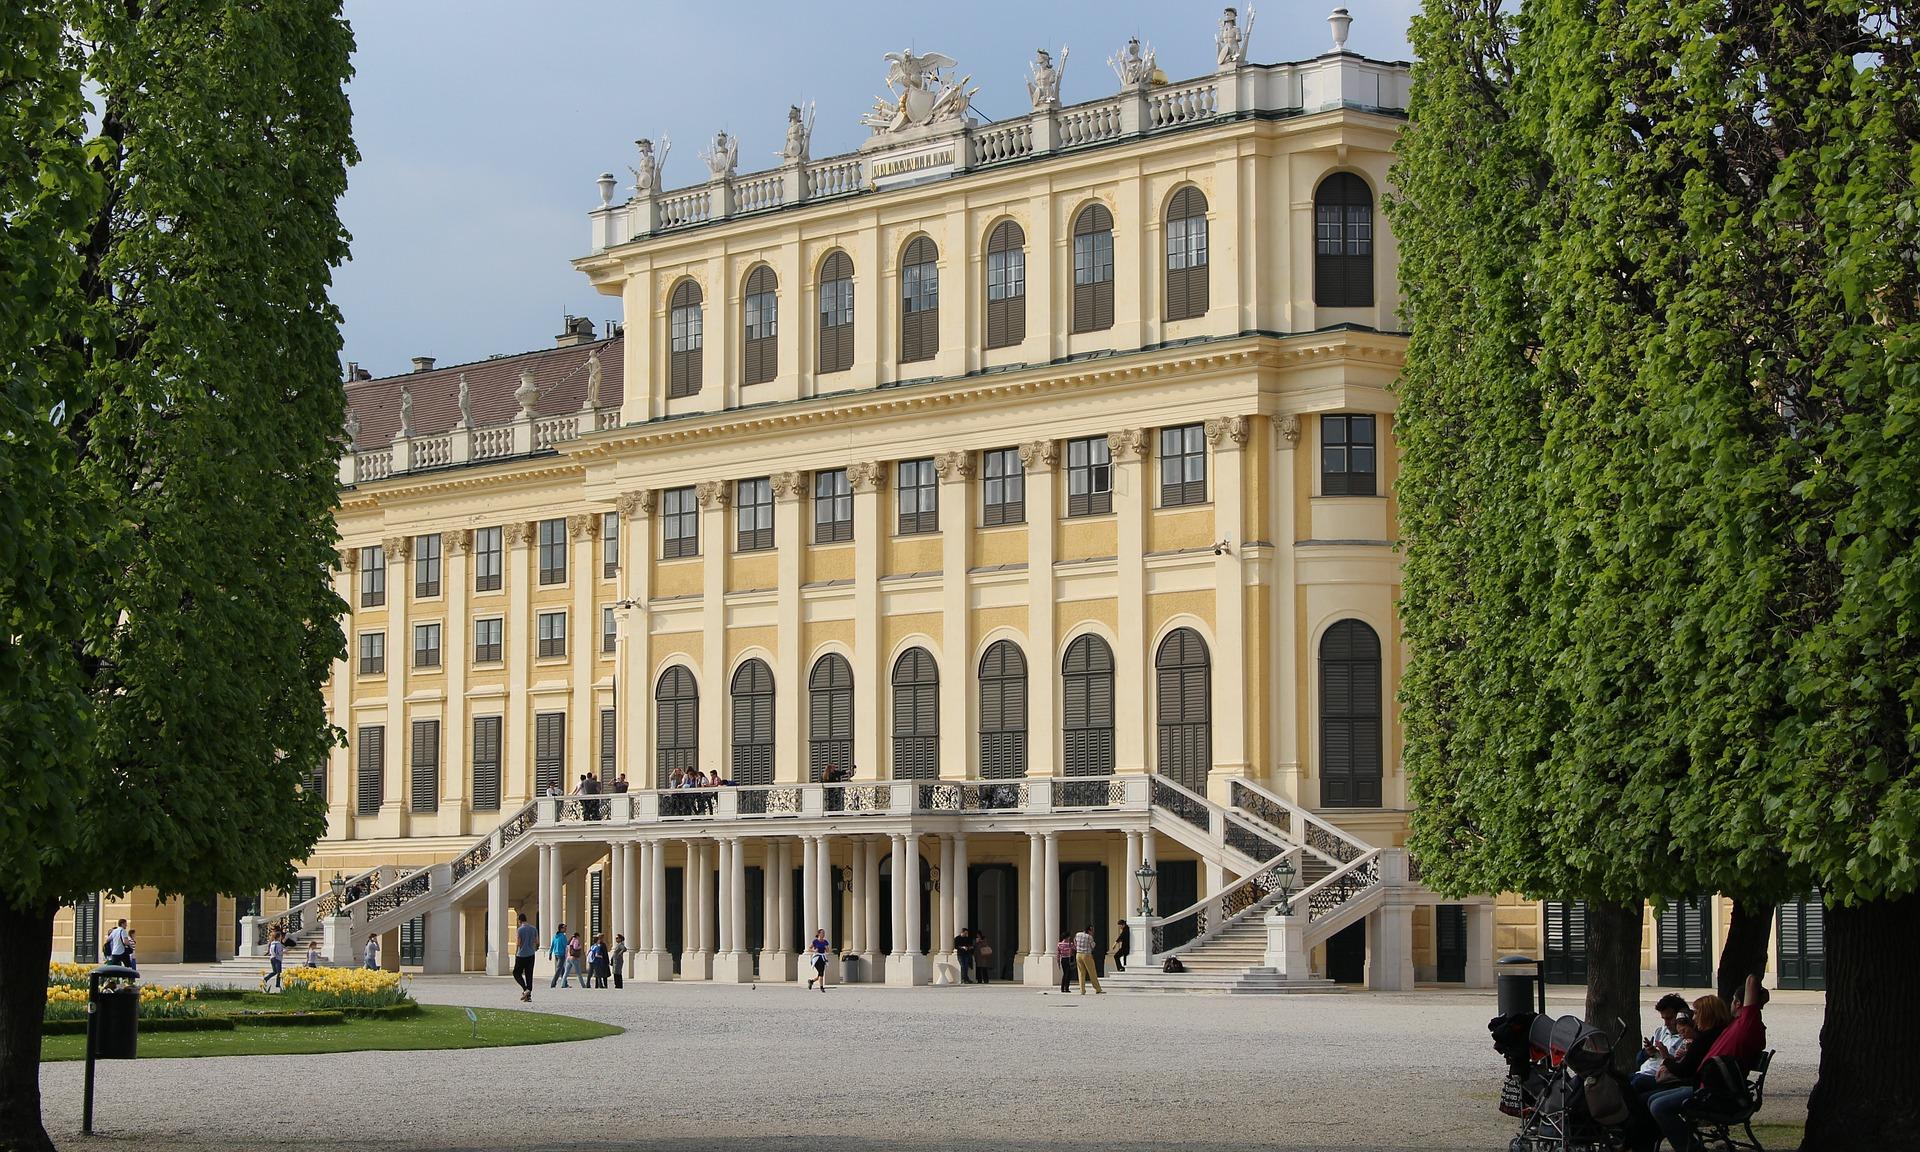 Ostermarkt Schloss Schönbrunn